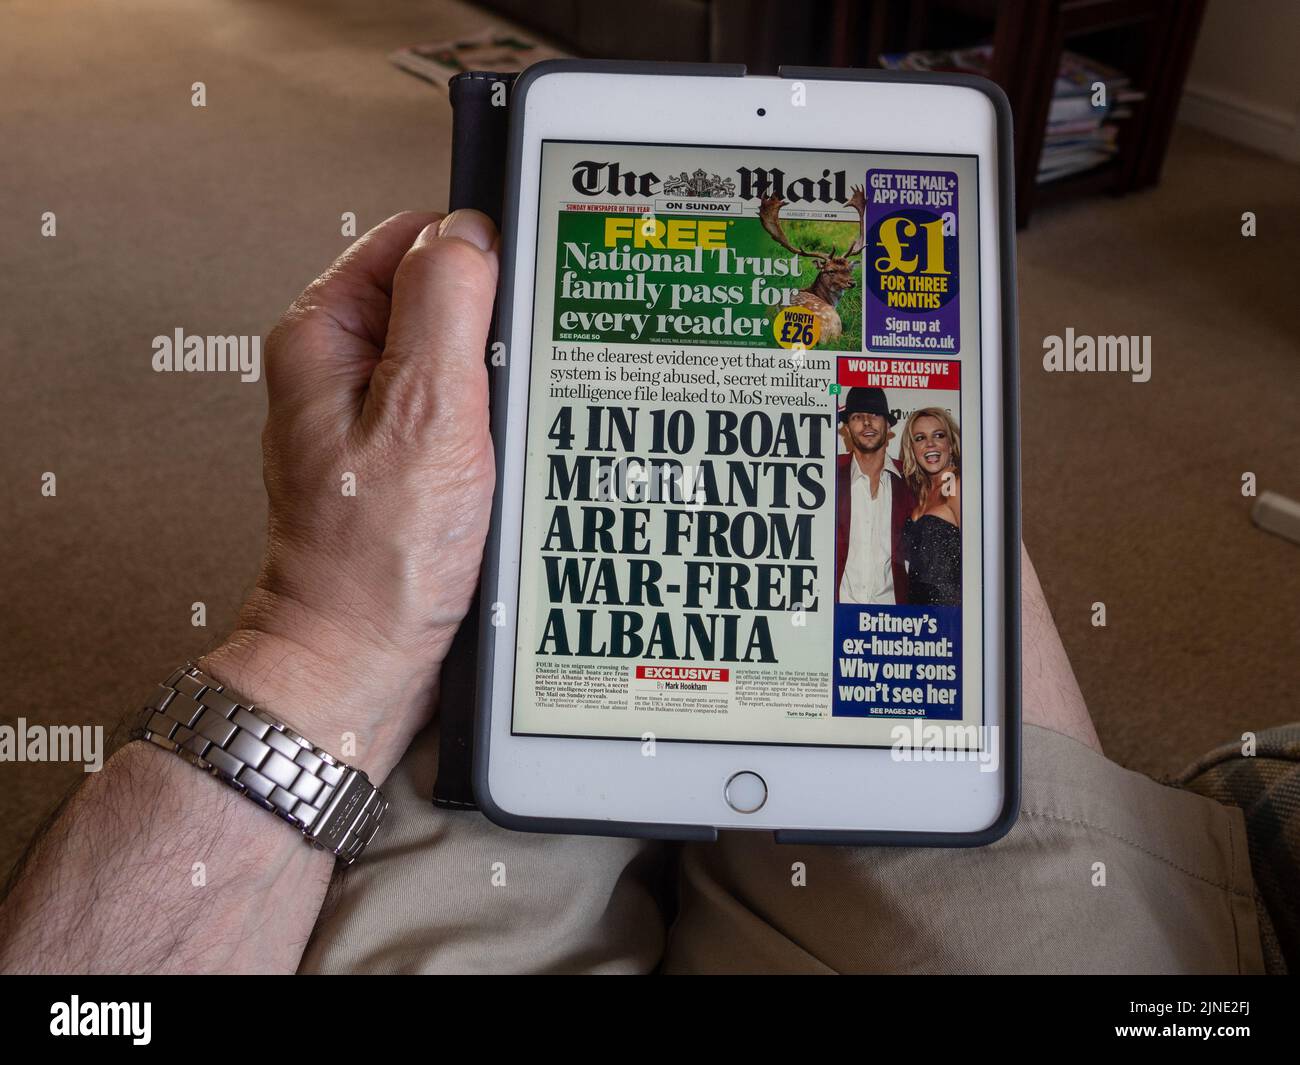 Hombre leyendo el correo el domingo 7th de agosto de 2022 en un iPad Mini; titular sobre los migrantes en barco de Albania Foto de stock